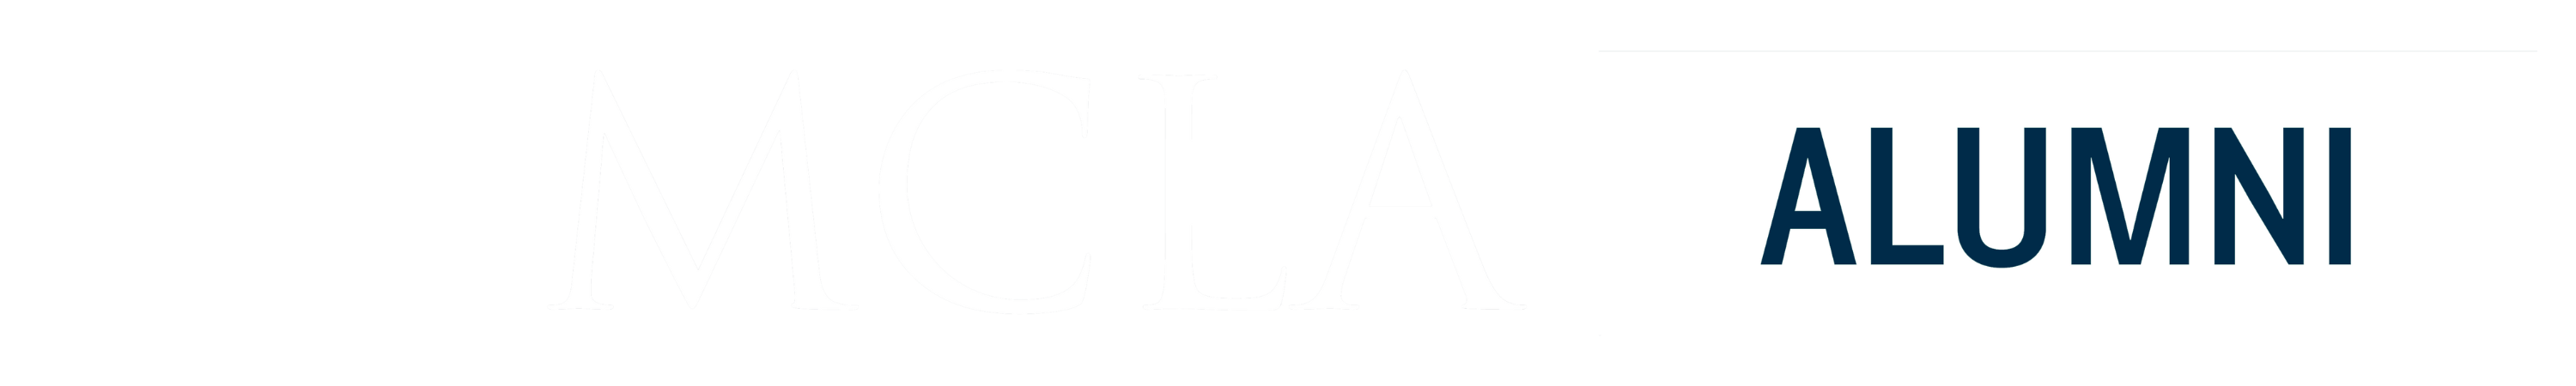 MCLA Alumni Logo